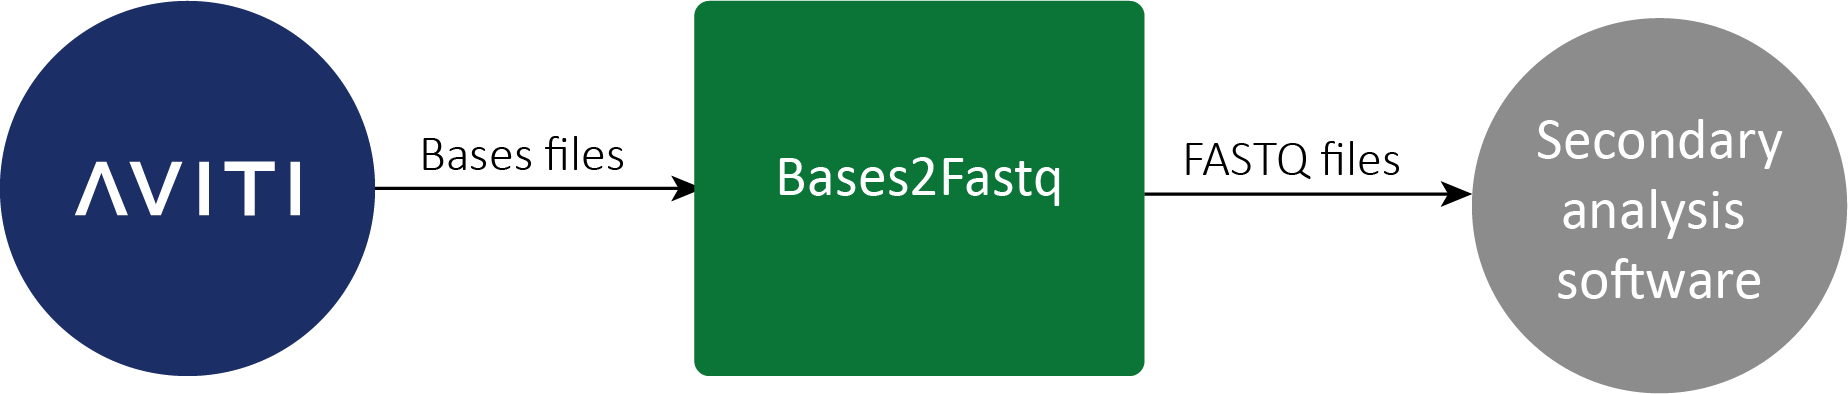 Bases2Fastq